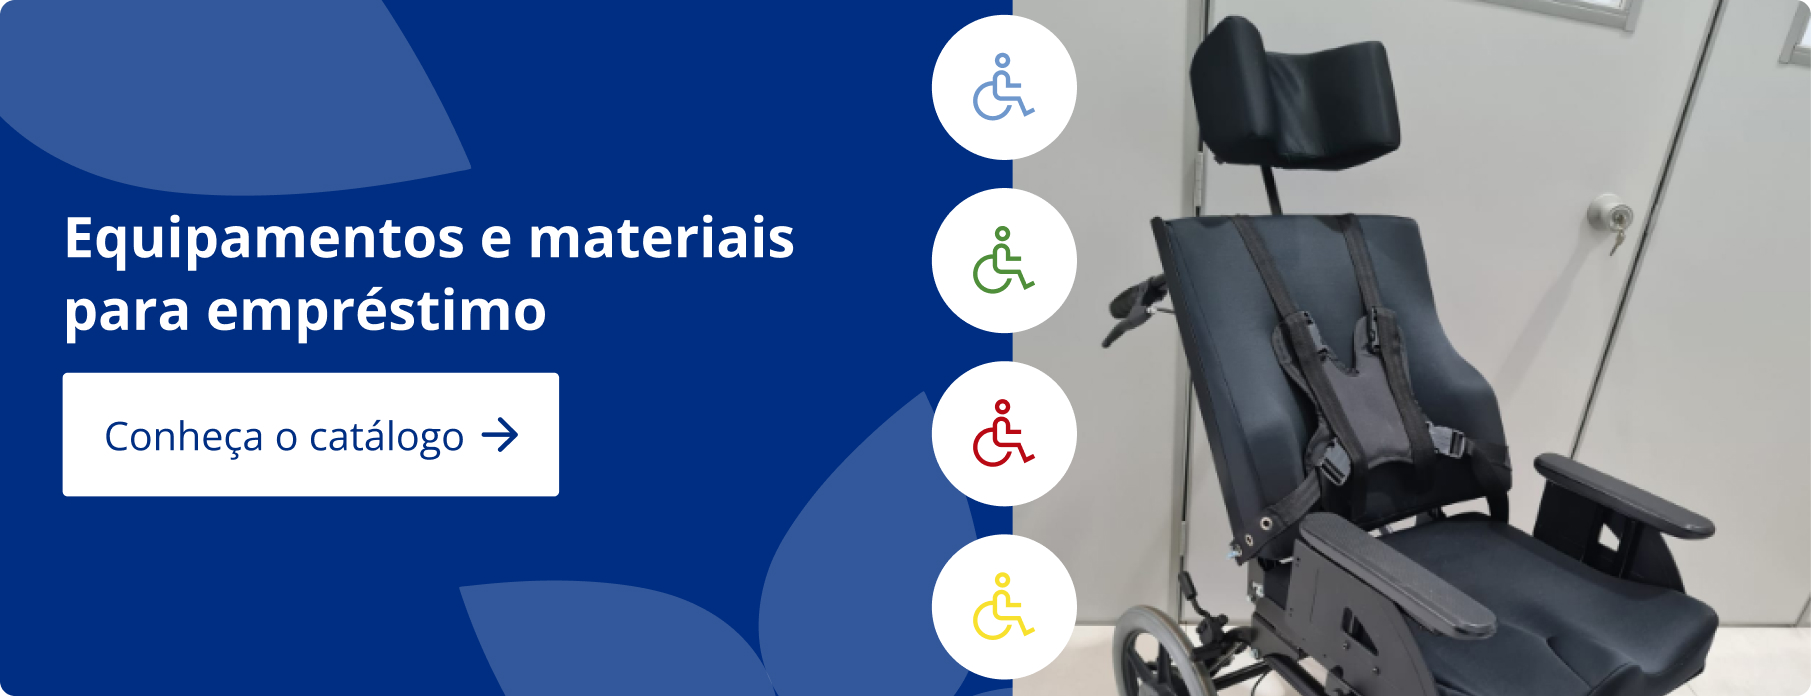 Cartaz contendo um fundo azul e a imagem de uma cadeira de rodas no topo, com o texto: Equipamentos e Materiais para empréstimo no CEMAPA Conheça o catálogo